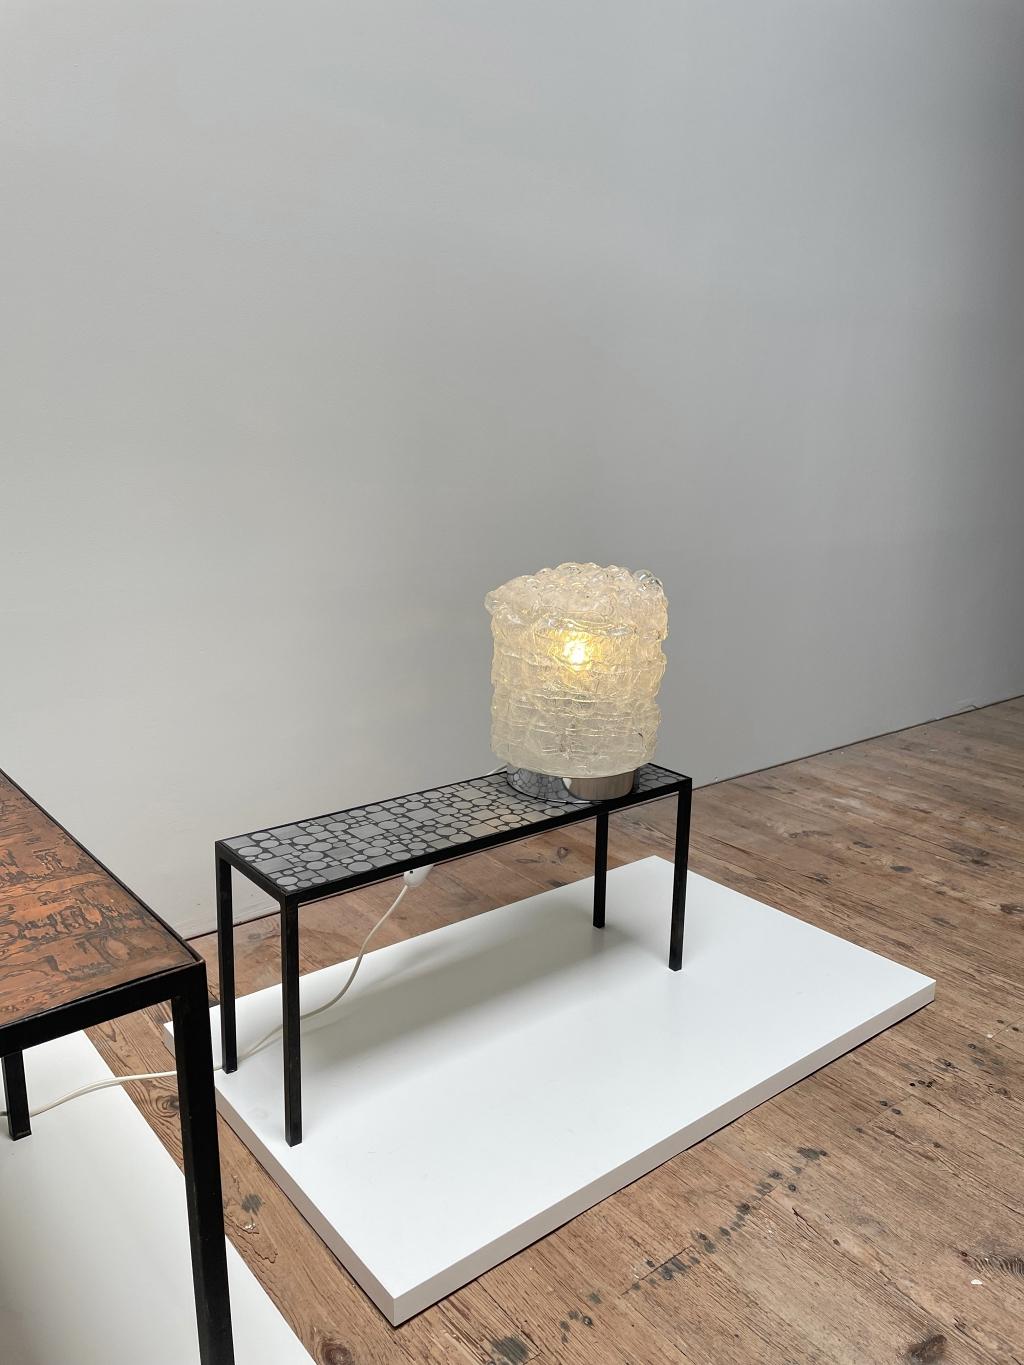 Elegante Space-Age-Tischleuchte, hergestellt von DORIA Leuchten in Deutschland. Die Lampe besteht aus einem Metallsockel mit einem mundgeblasenen Lampenschirm, der Luftblasen enthält und für ein sanftes und wunderbares Licht sorgt. Die Lampe ist in